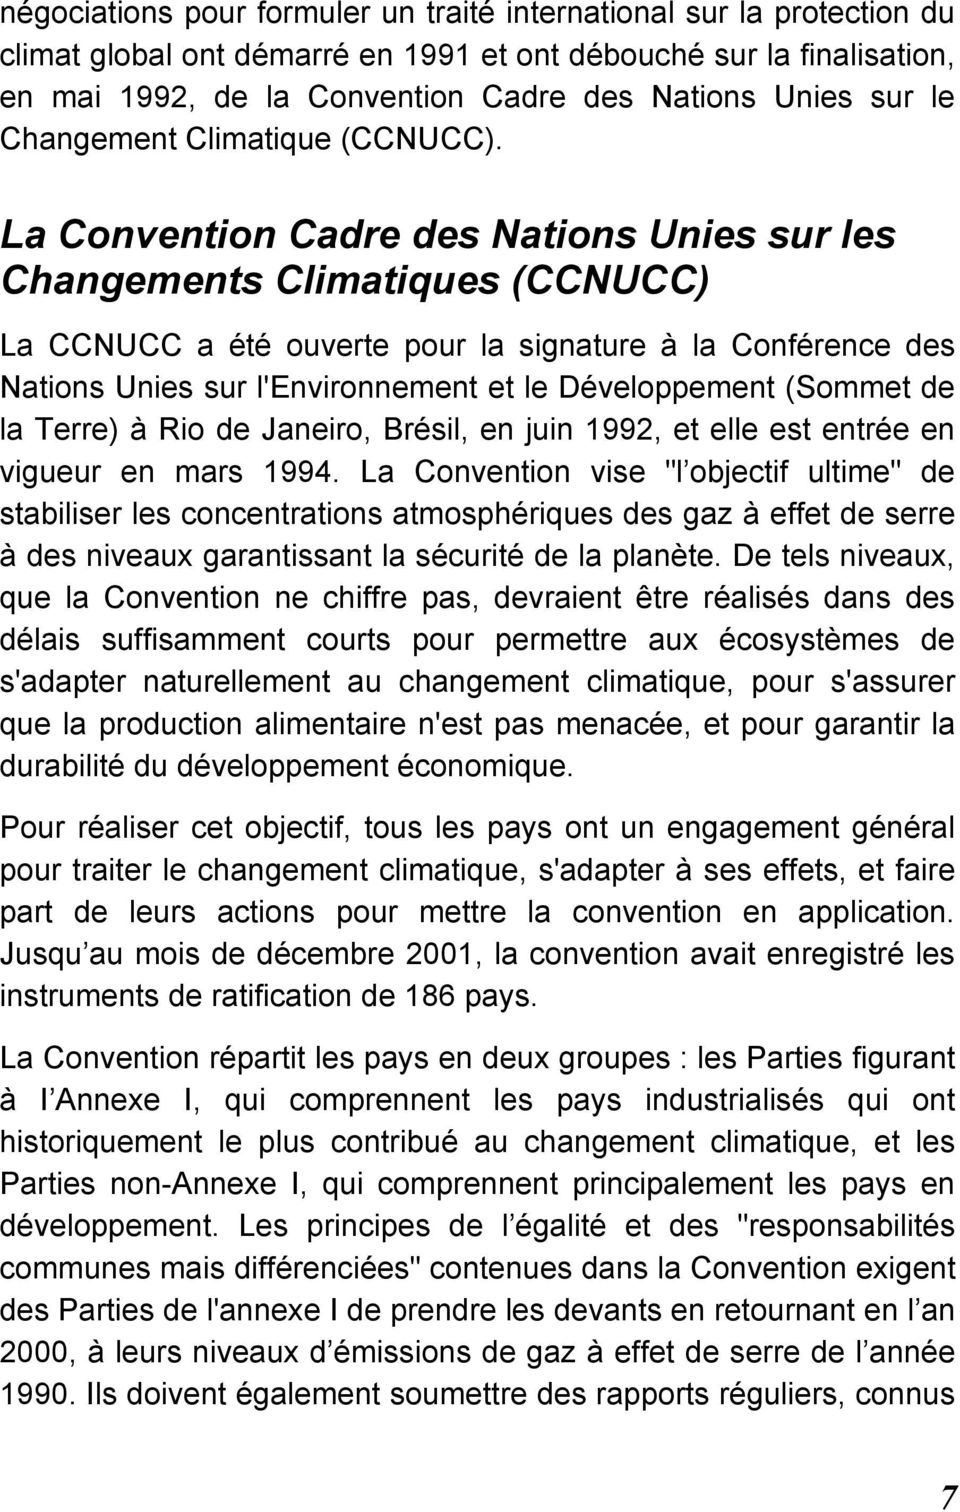 La Convention Cadre des Nations Unies sur les Changements Climatiques (CCNUCC) La CCNUCC a été ouverte pour la signature à la Conférence des Nations Unies sur l'environnement et le Développement